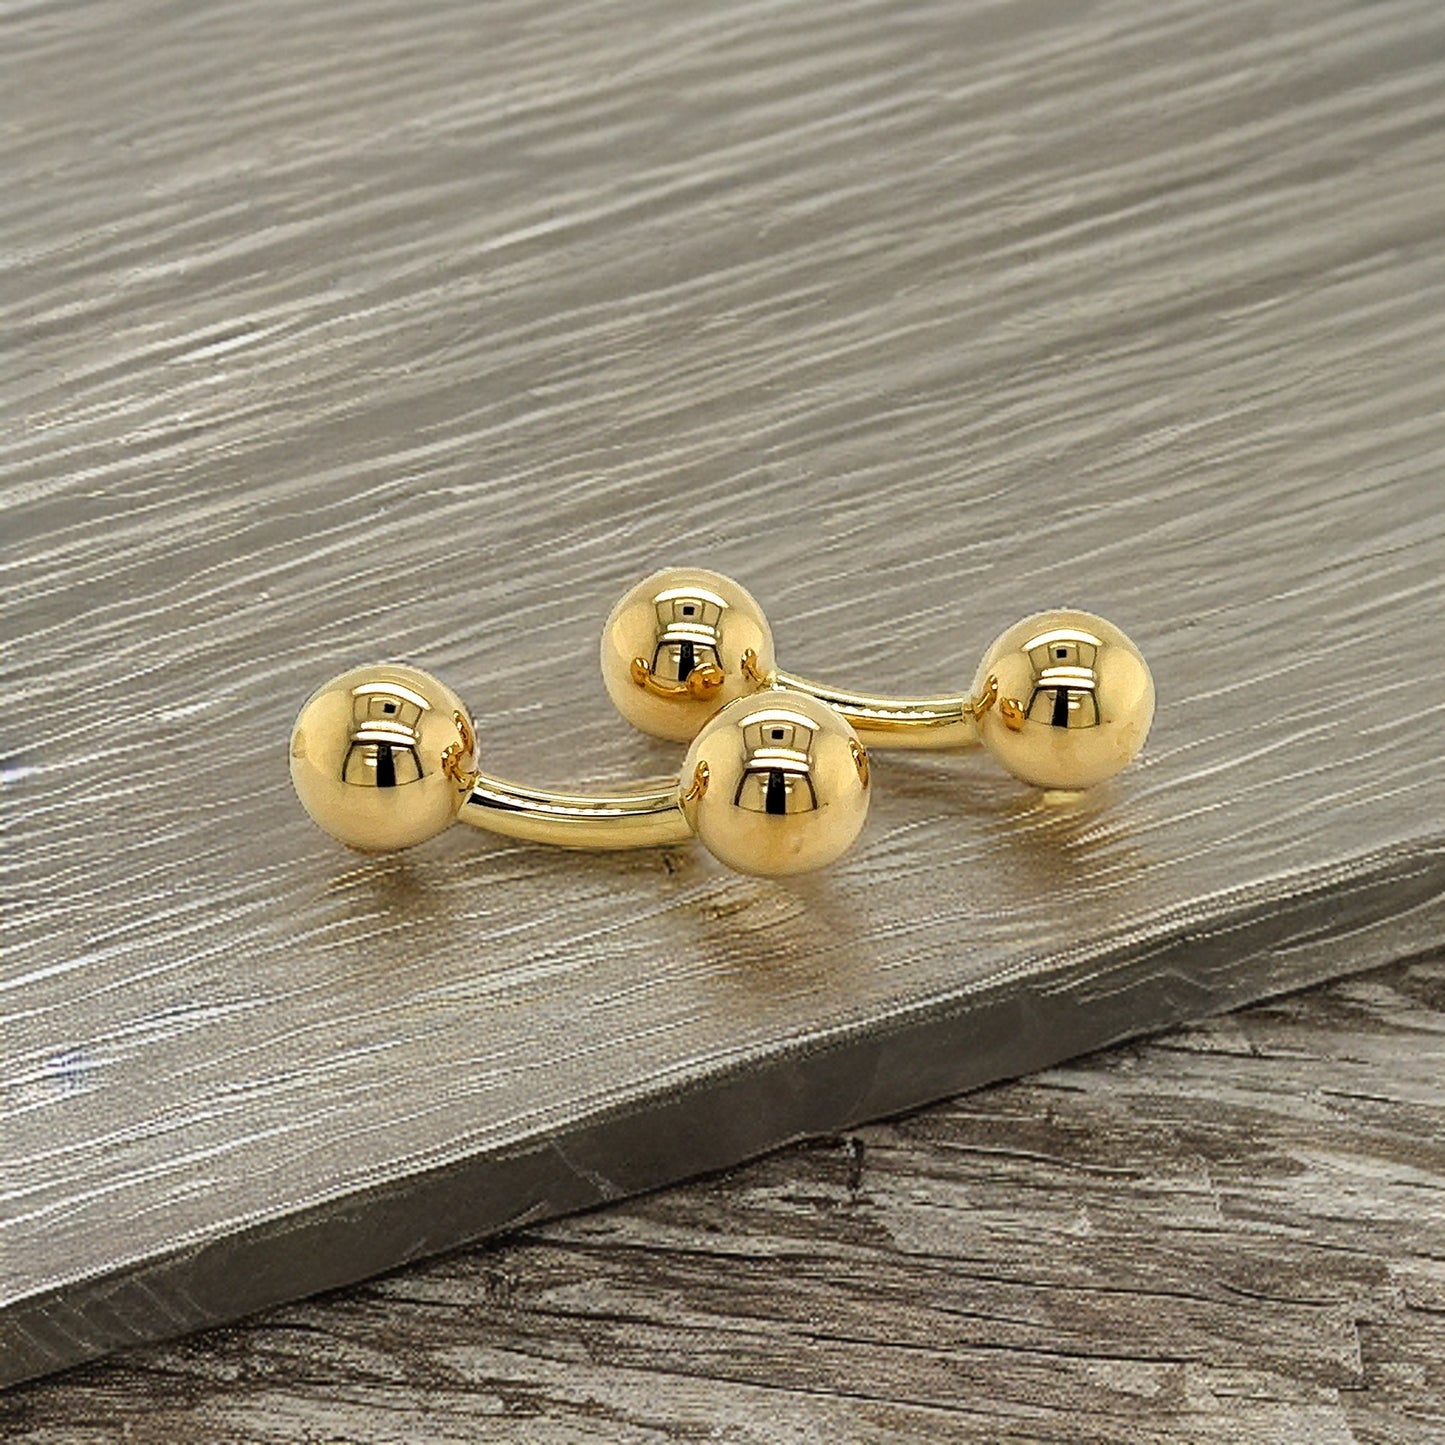 Tiffany & Co Estate Barbell Cufflinks 14k Y Gold TIF340 - Certified Fine Jewelry